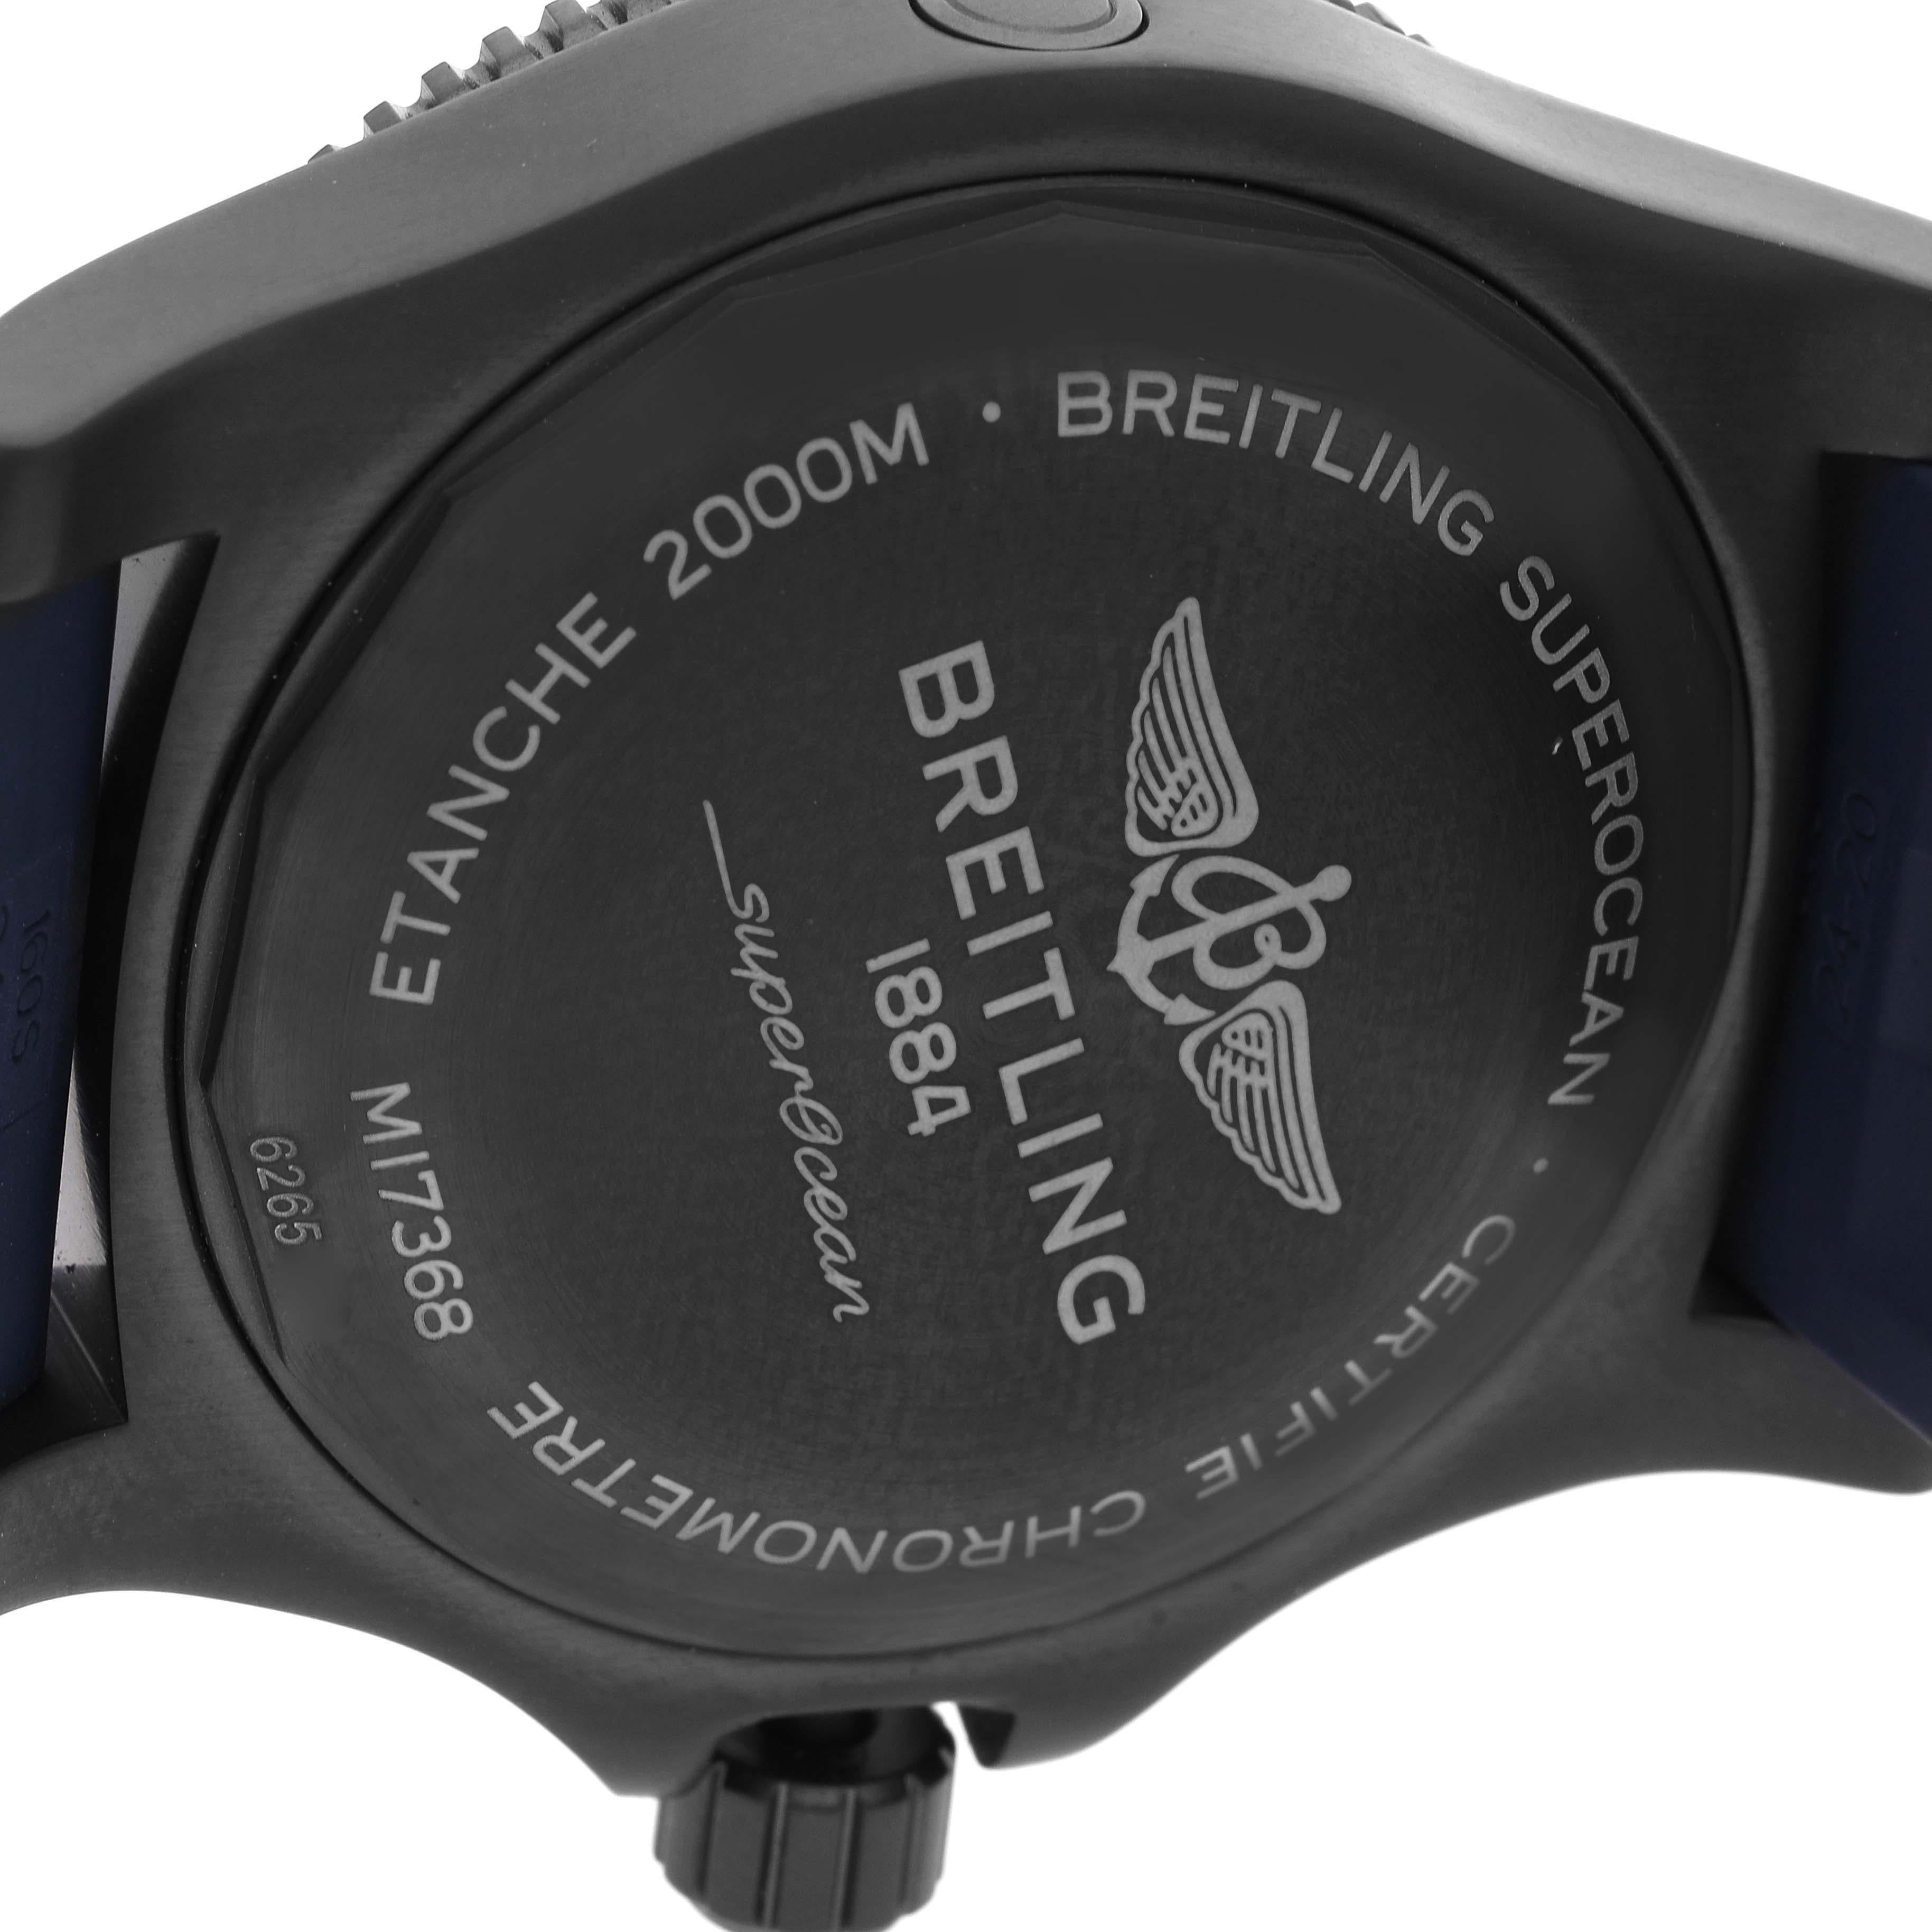 Breitling Superocean 46 Blue Dial DLC Steel Mens Watch M17368 Unworn For Sale 1